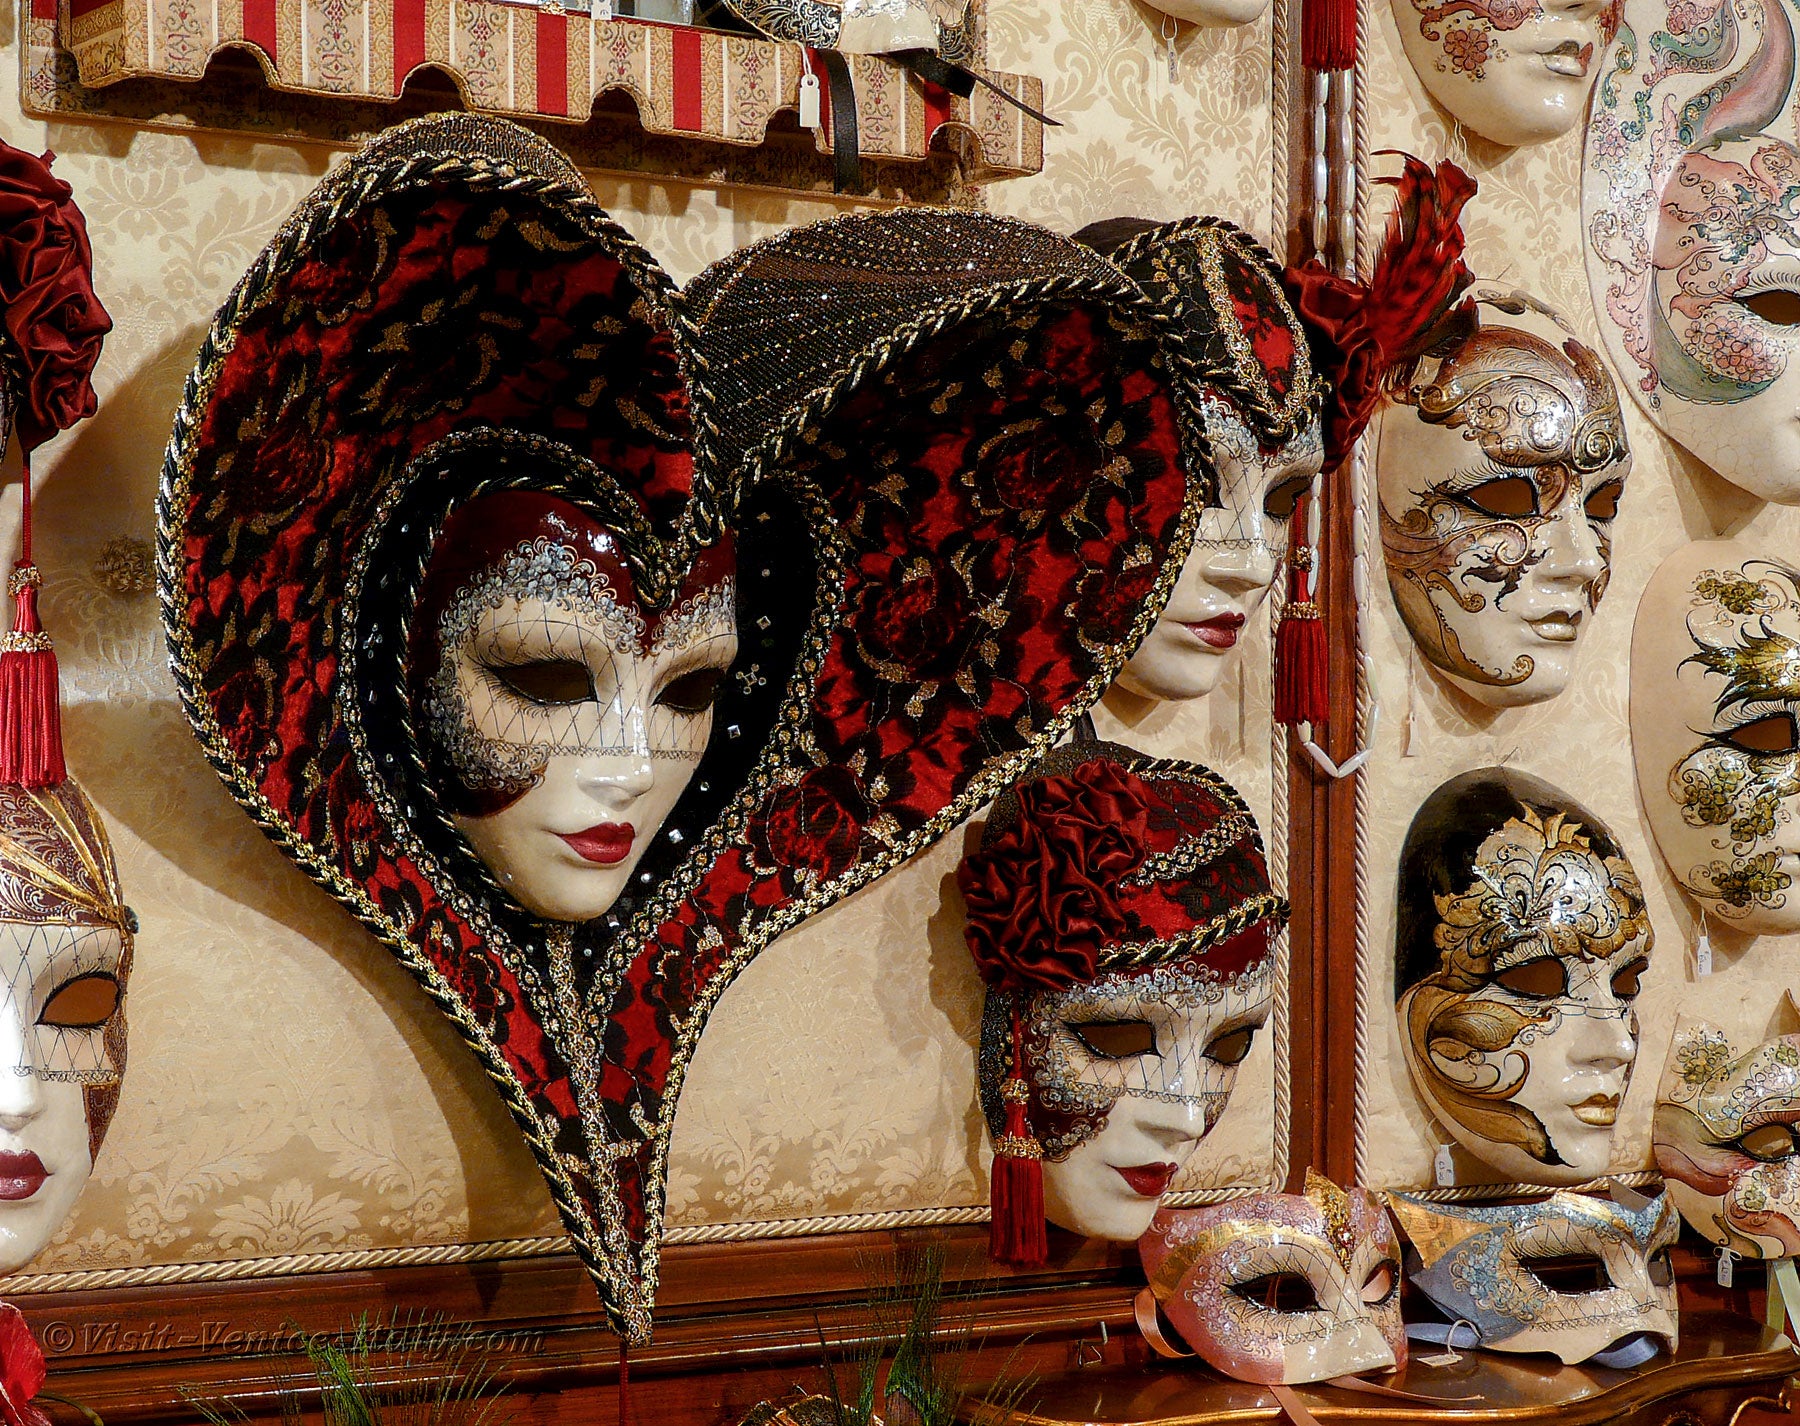 Buy Venice Carnival in Venice Italy